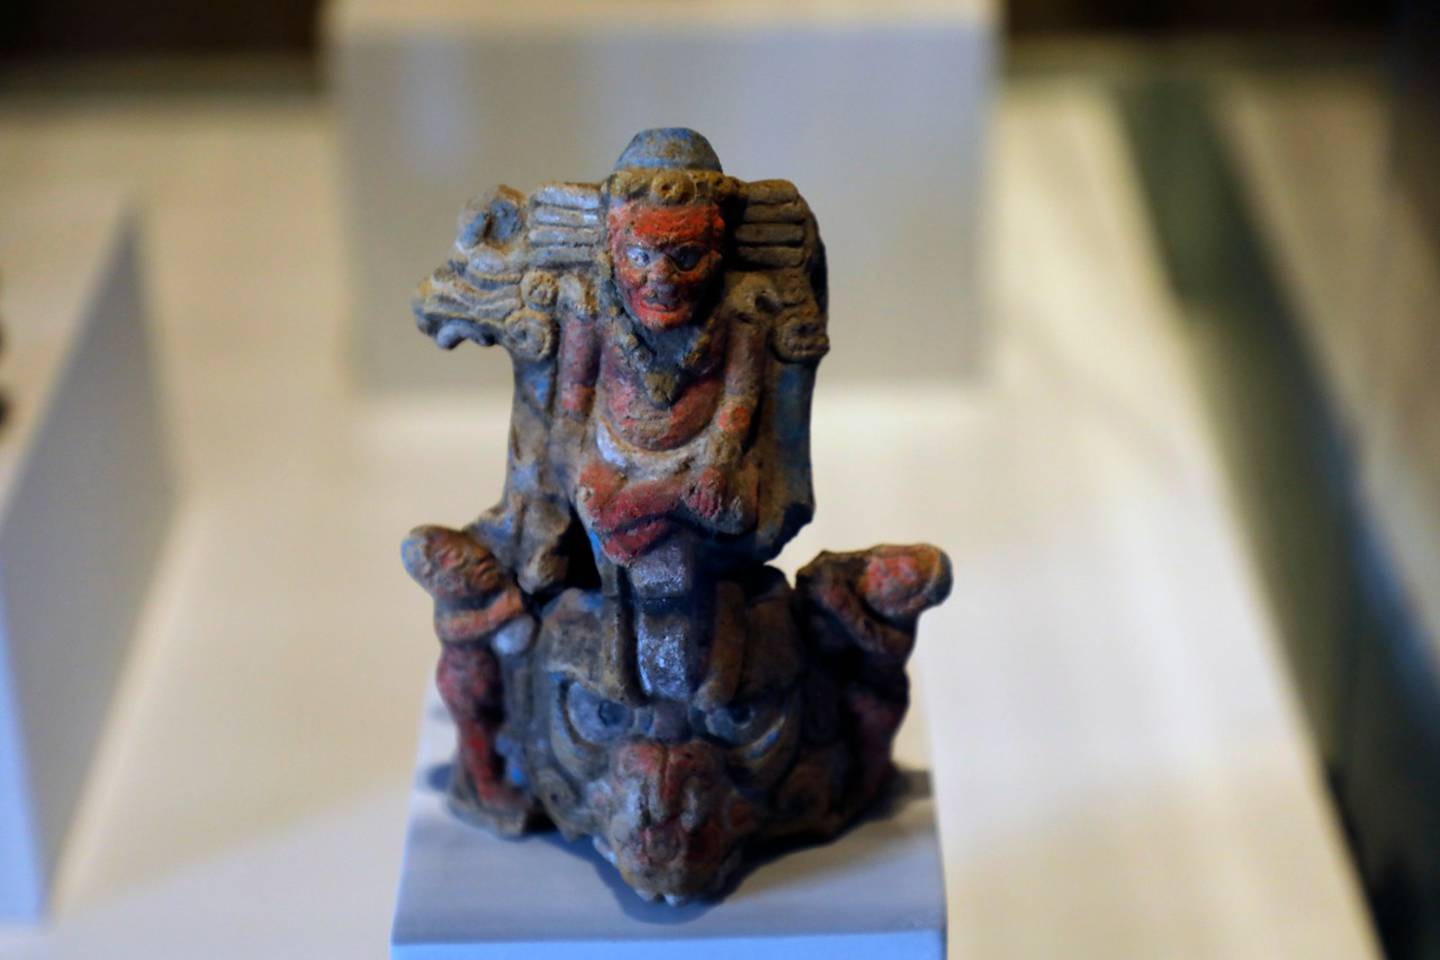 En las instalaciones se encuentran piezas del arte colonial y milenarias del arte prehispánico.dfd